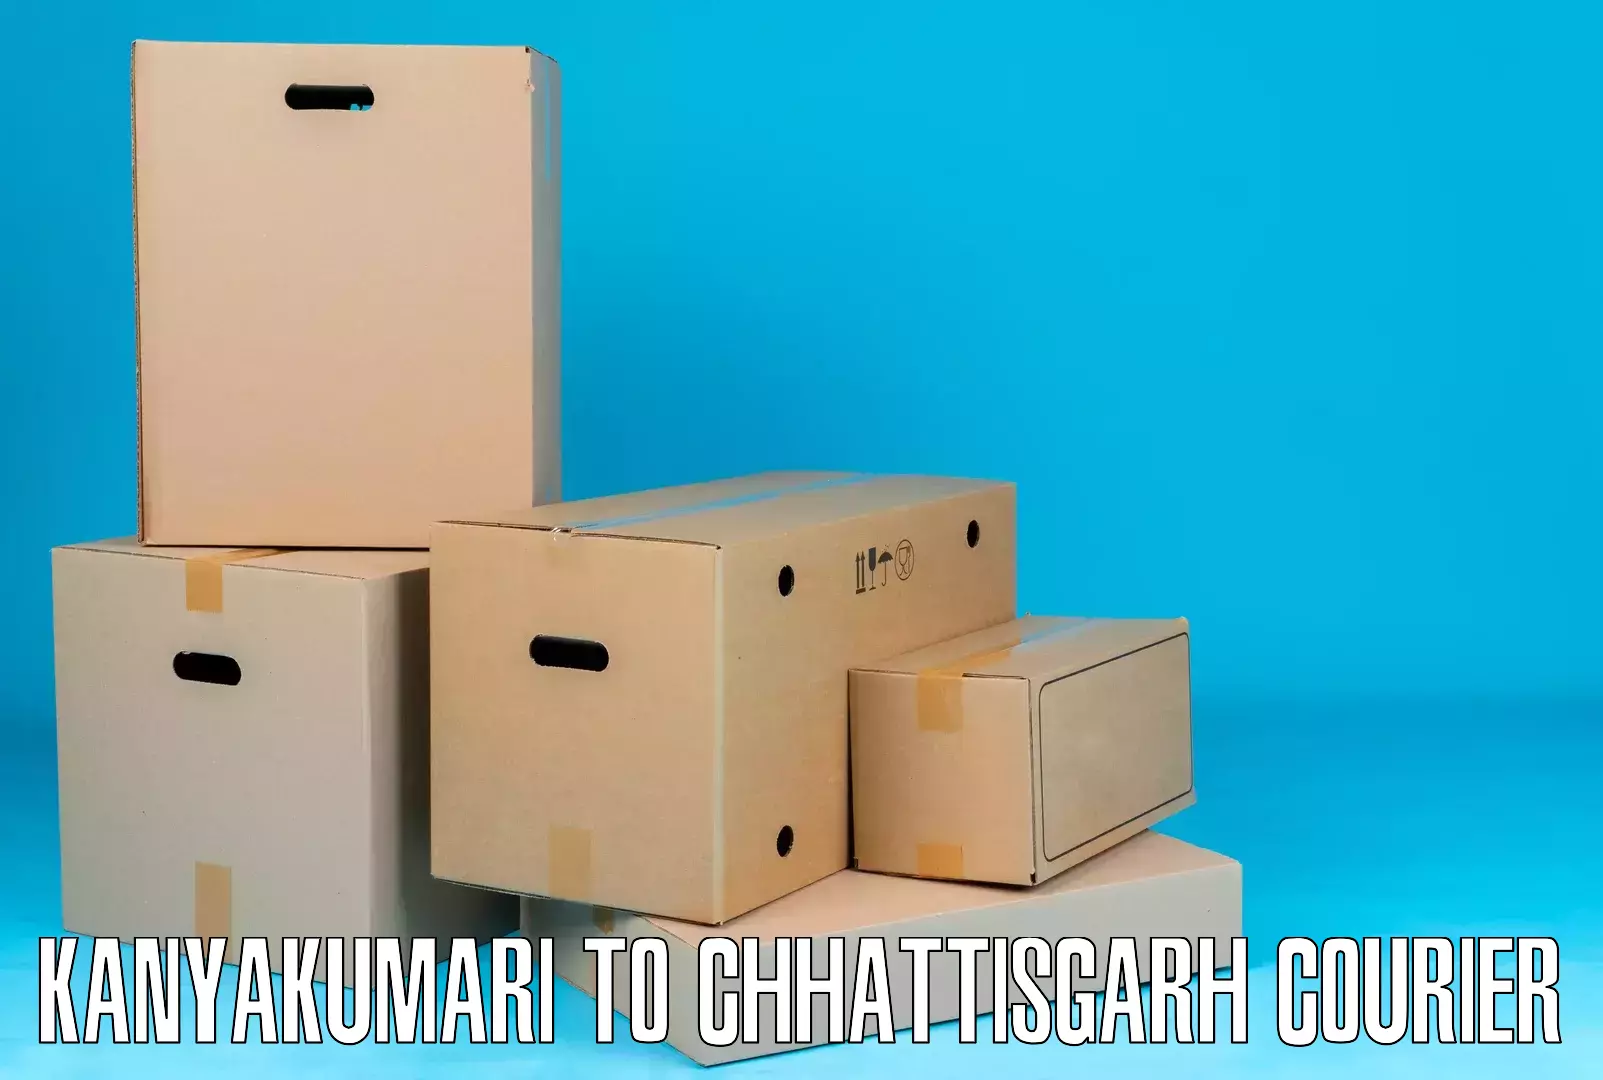 Premium courier solutions Kanyakumari to Dhamtari